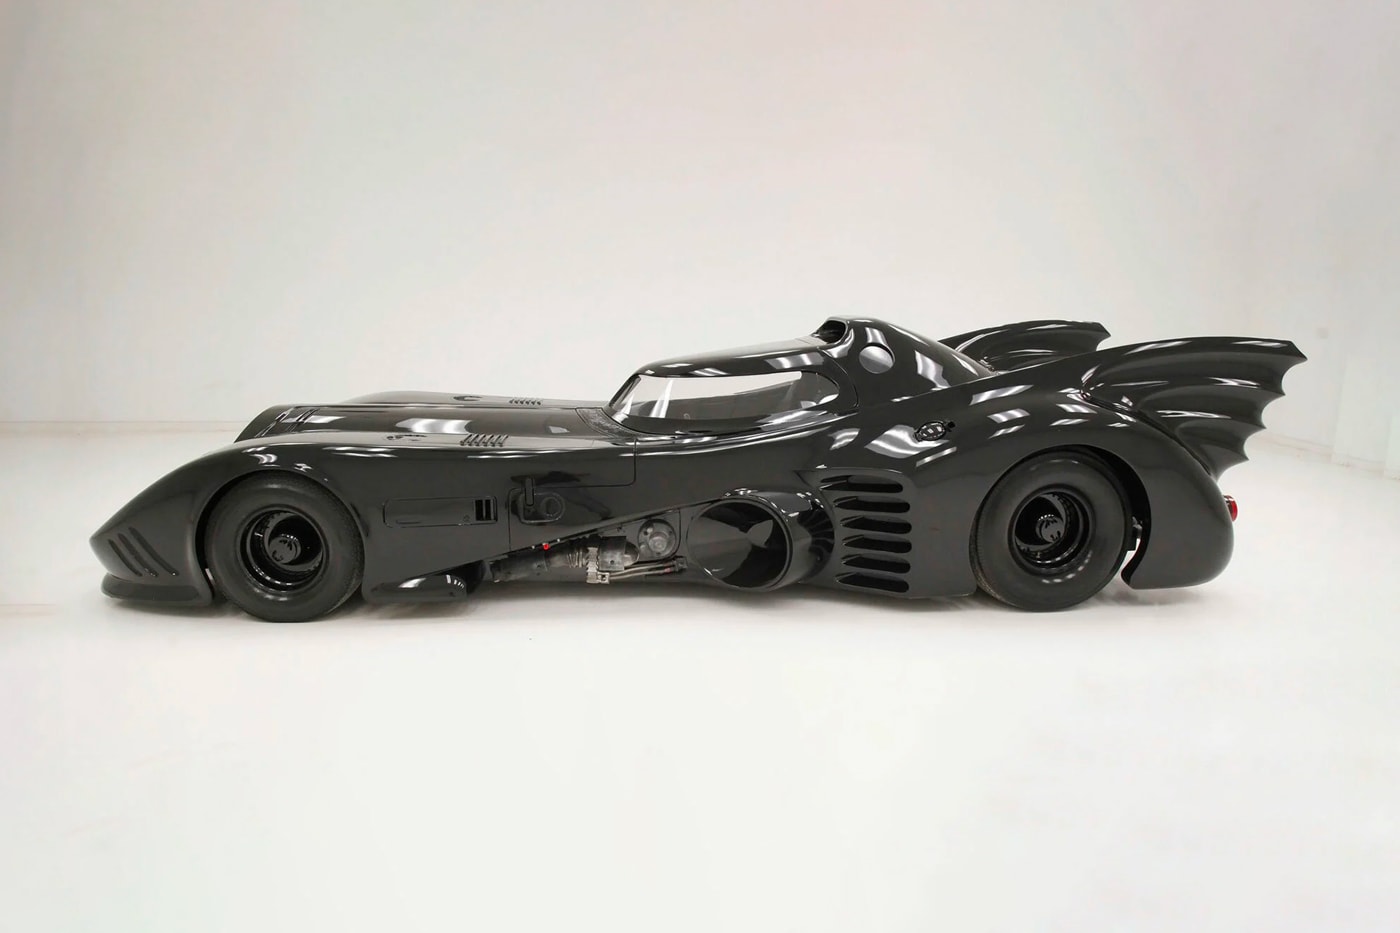 Voiture miniature 'Batman' - 1989 Batmobile & Batman